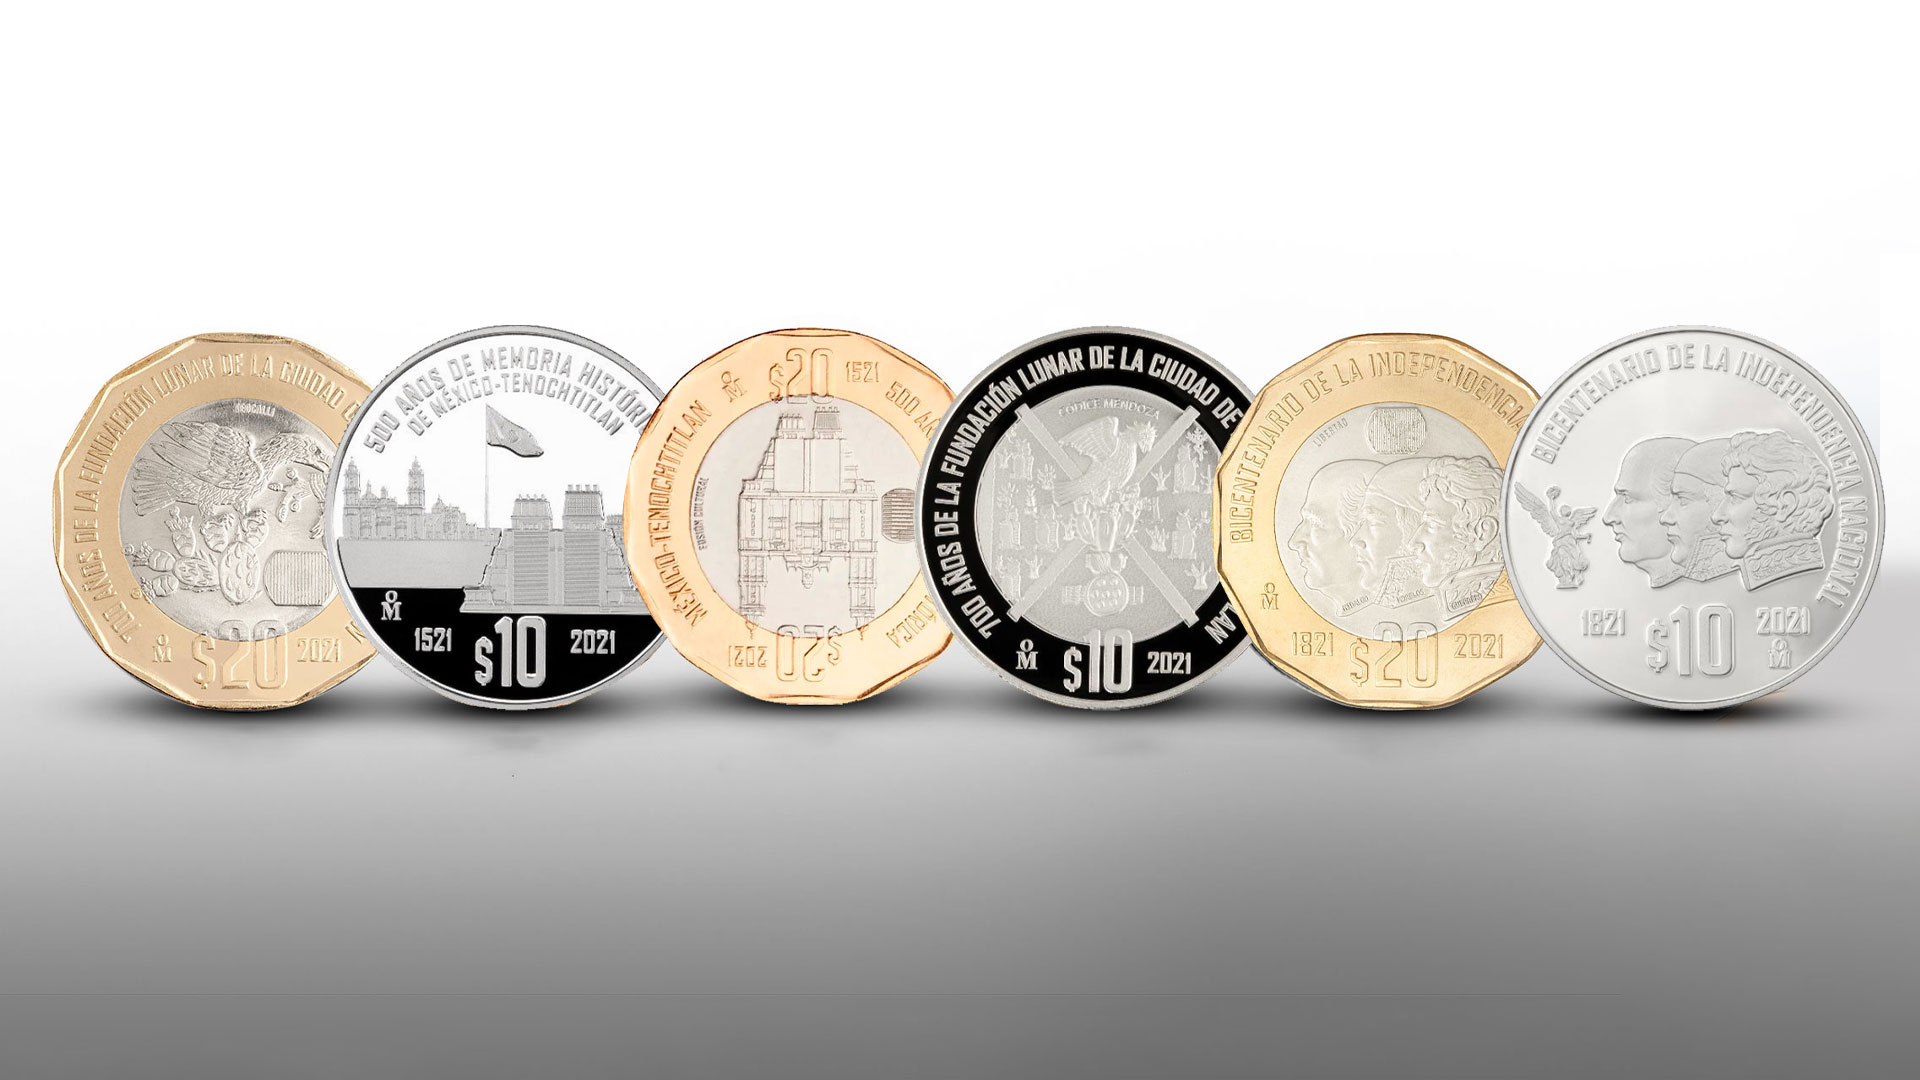 Las 6 monedas conmemorativas que se cotizan juntas en más de 400 mil pesos